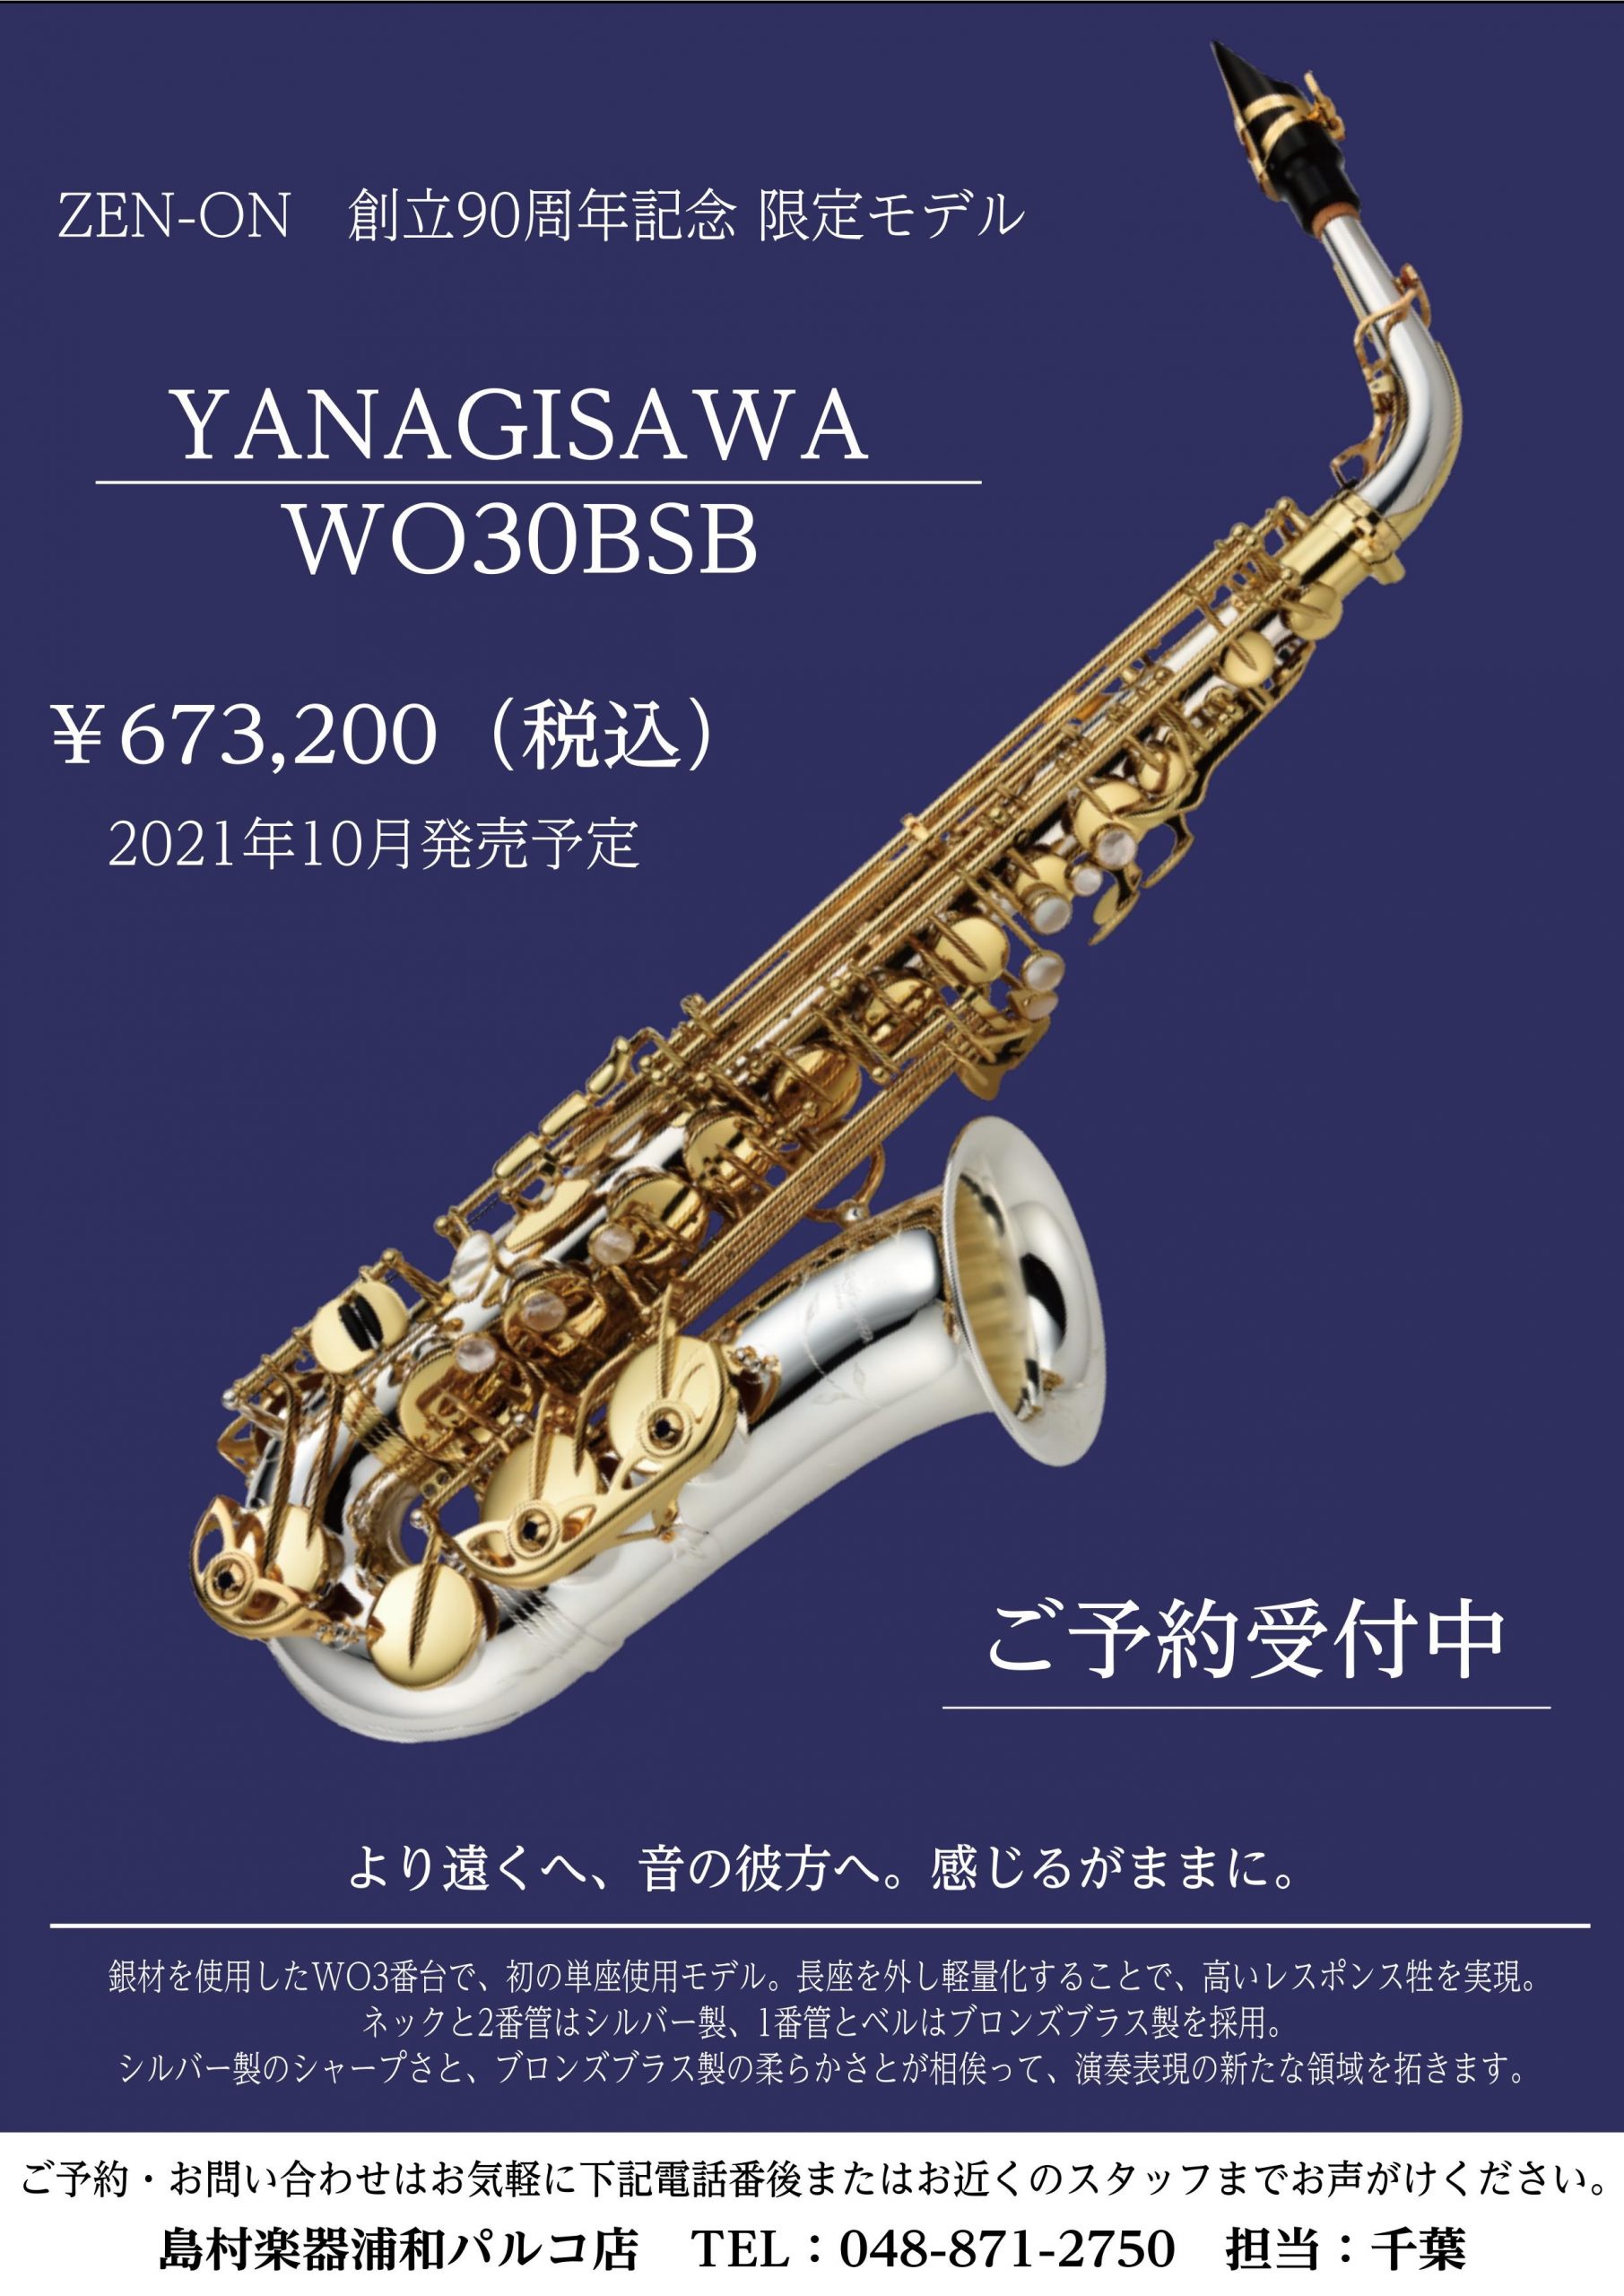 新製品】『Yanagisawa A-WO30BSB』ZEN-ON創立90周年記念限定モデル発売 